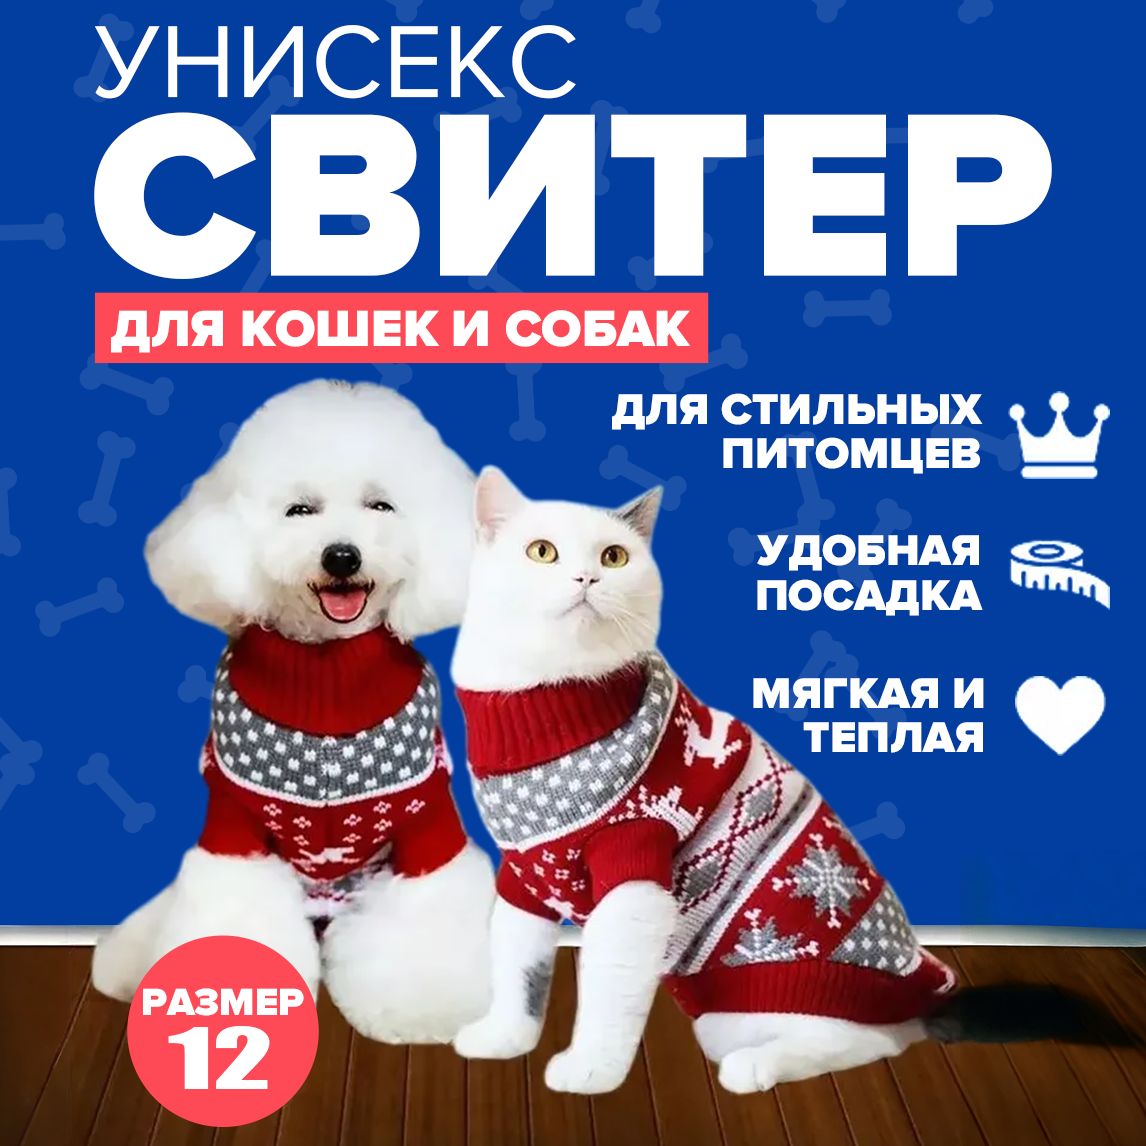 Шапки для собак на Купи!ру — низкие цены в проверенных интернет-магазинах и маркетплейсах Казани